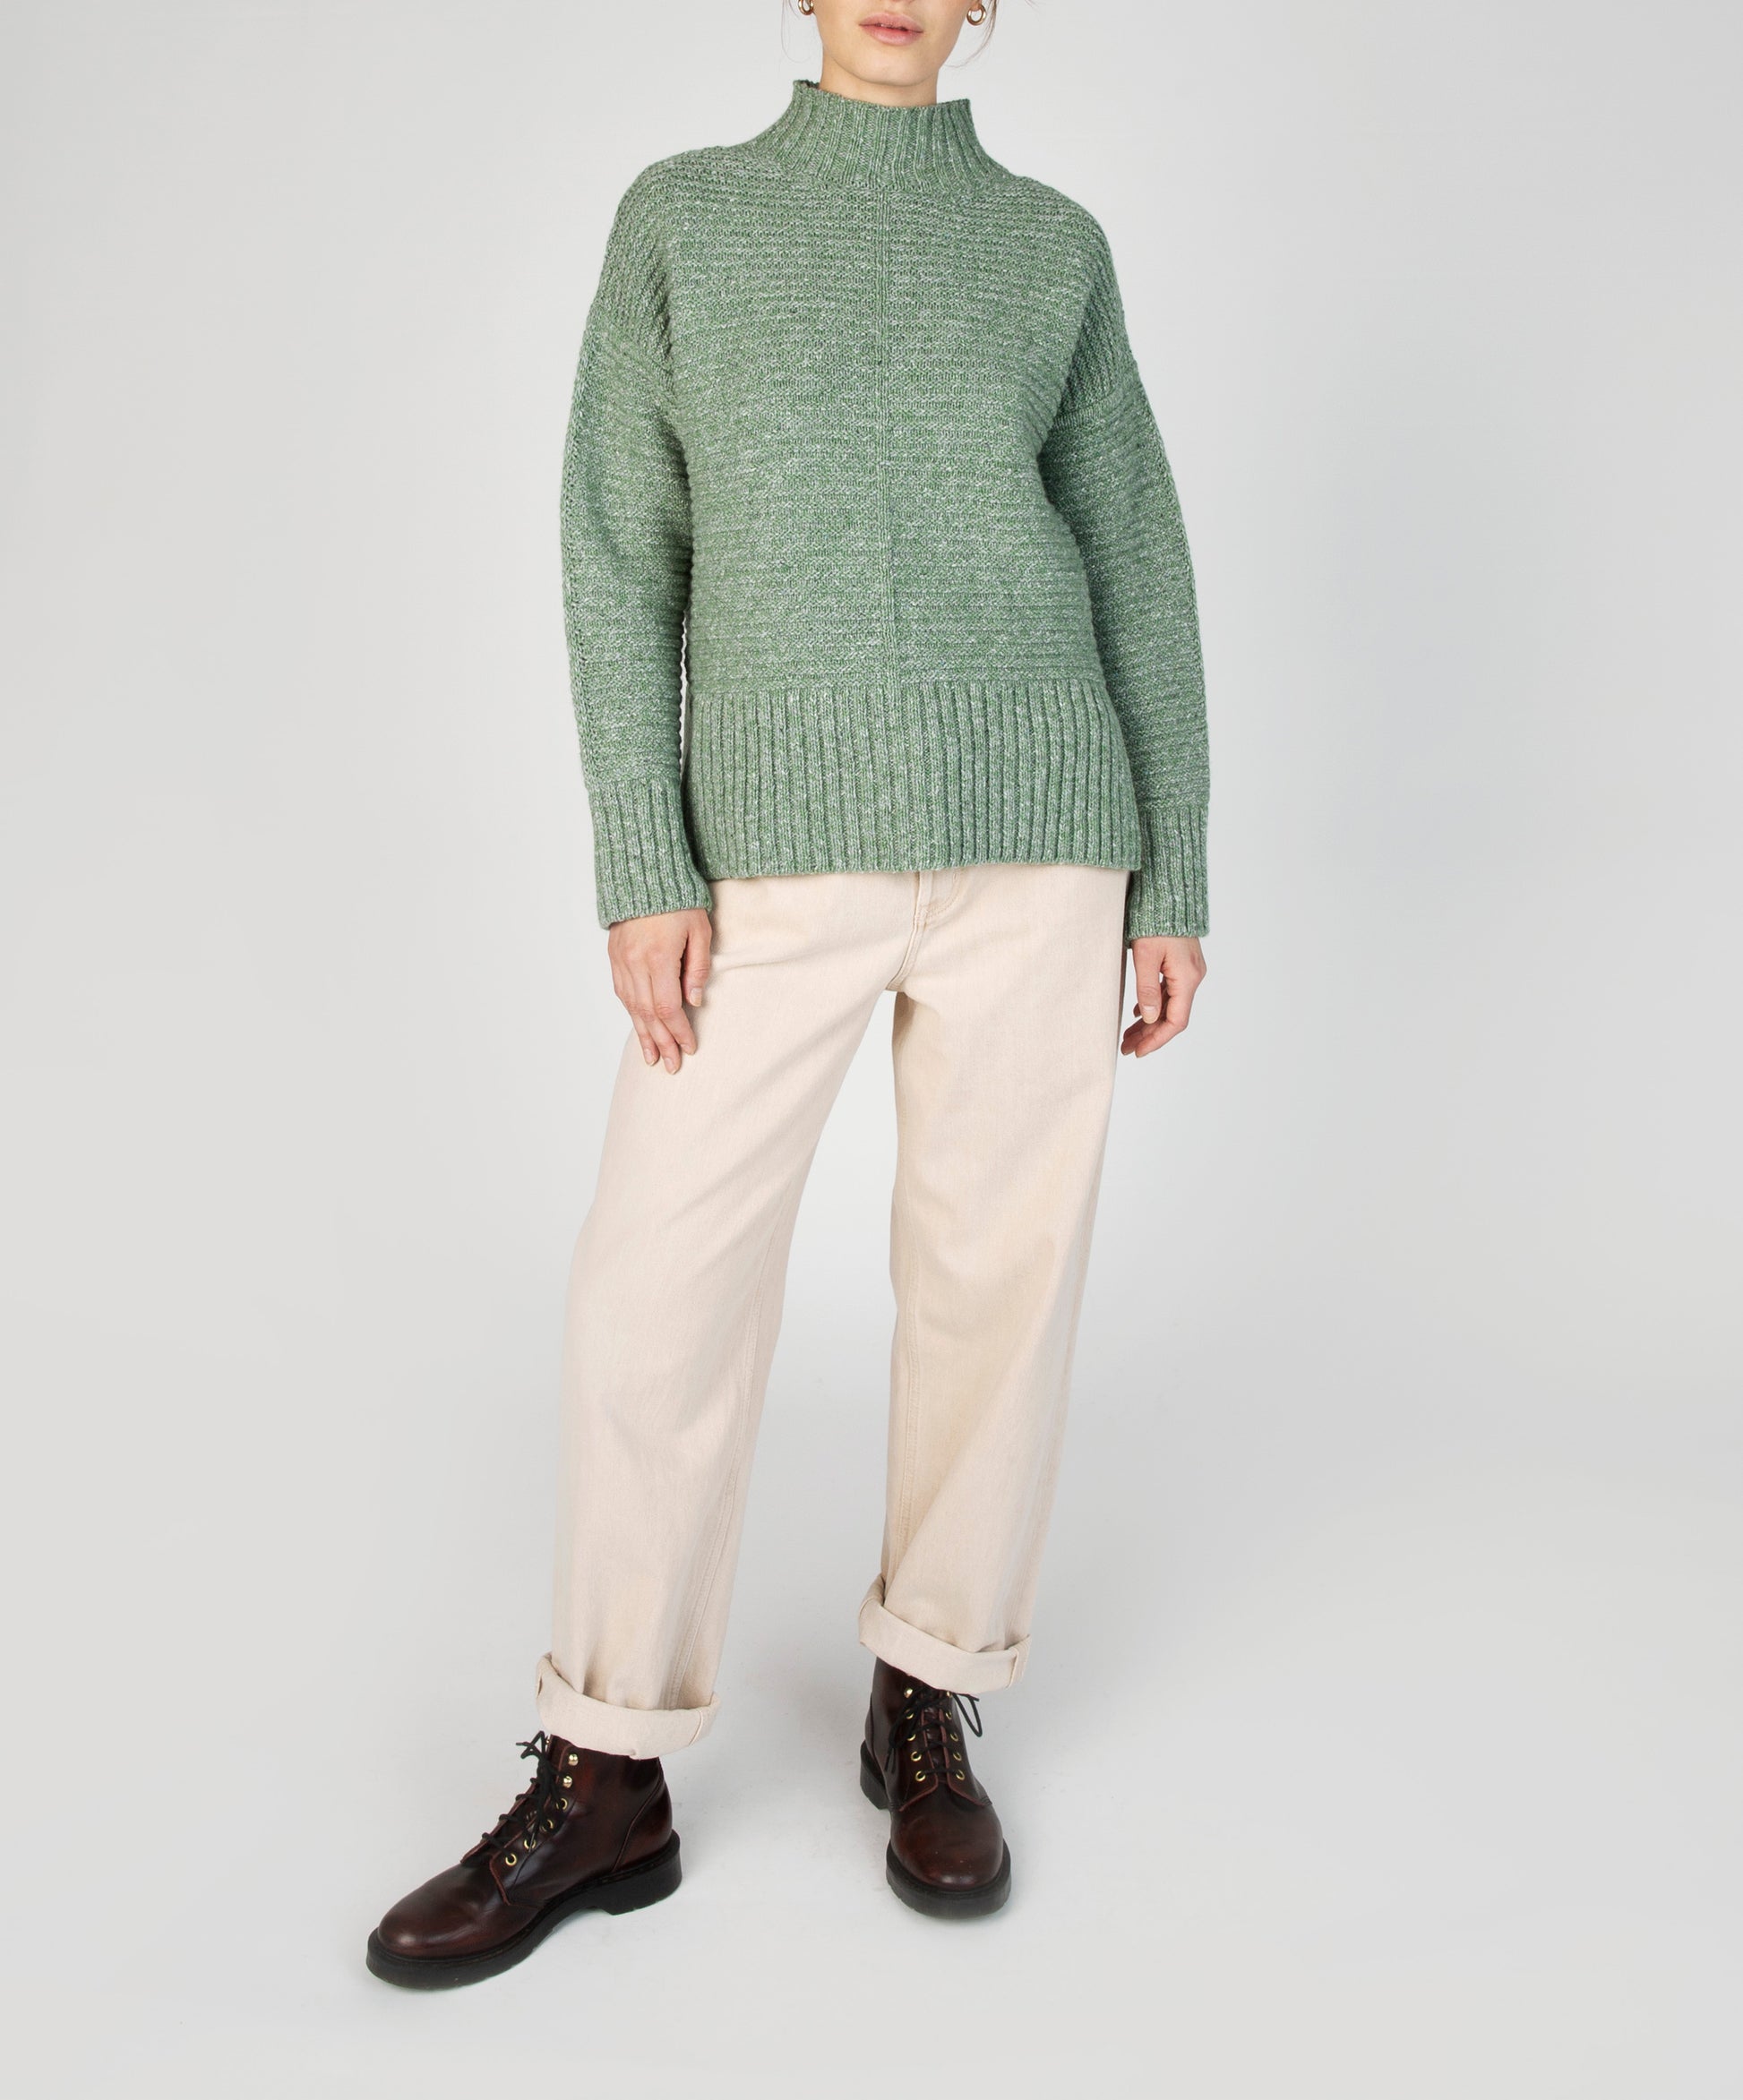 IrelandsEye Knitwear ‘Iris’ Contrast Panel Funnel Neck Sweater Apple